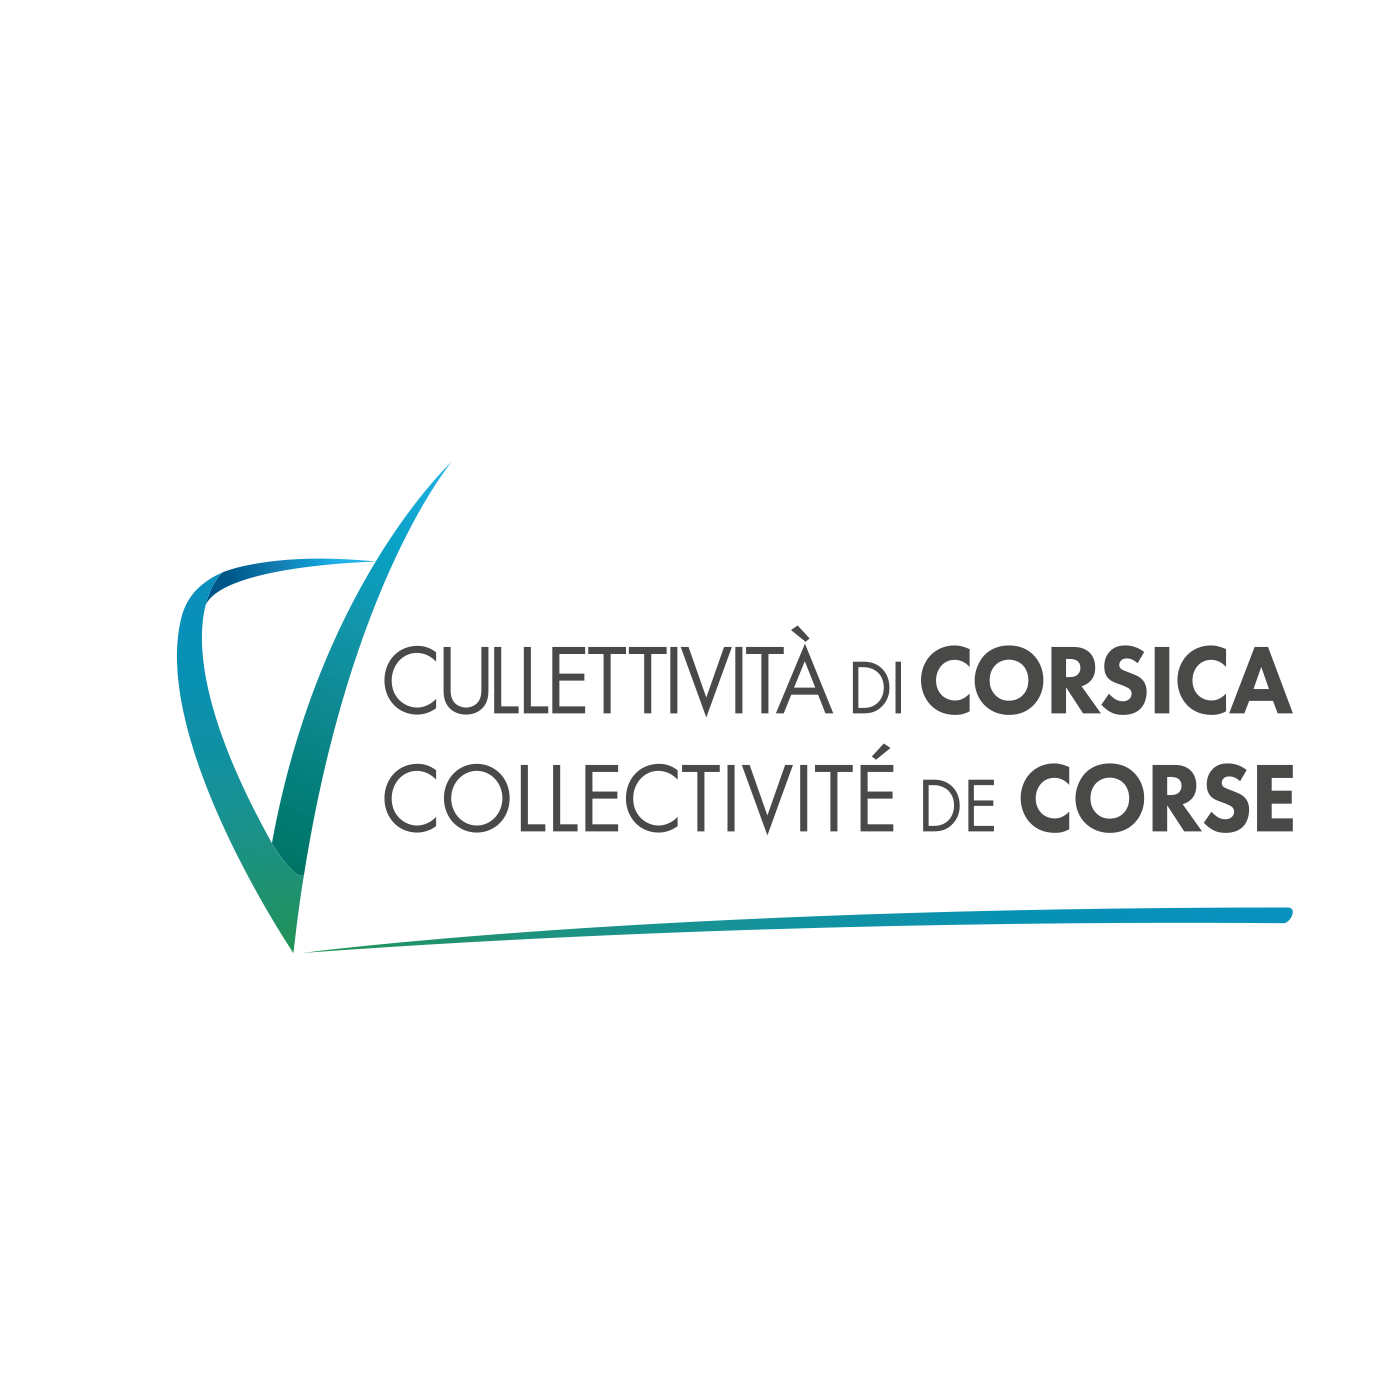 Collectivité de Corse - Cullettivita di Corsica